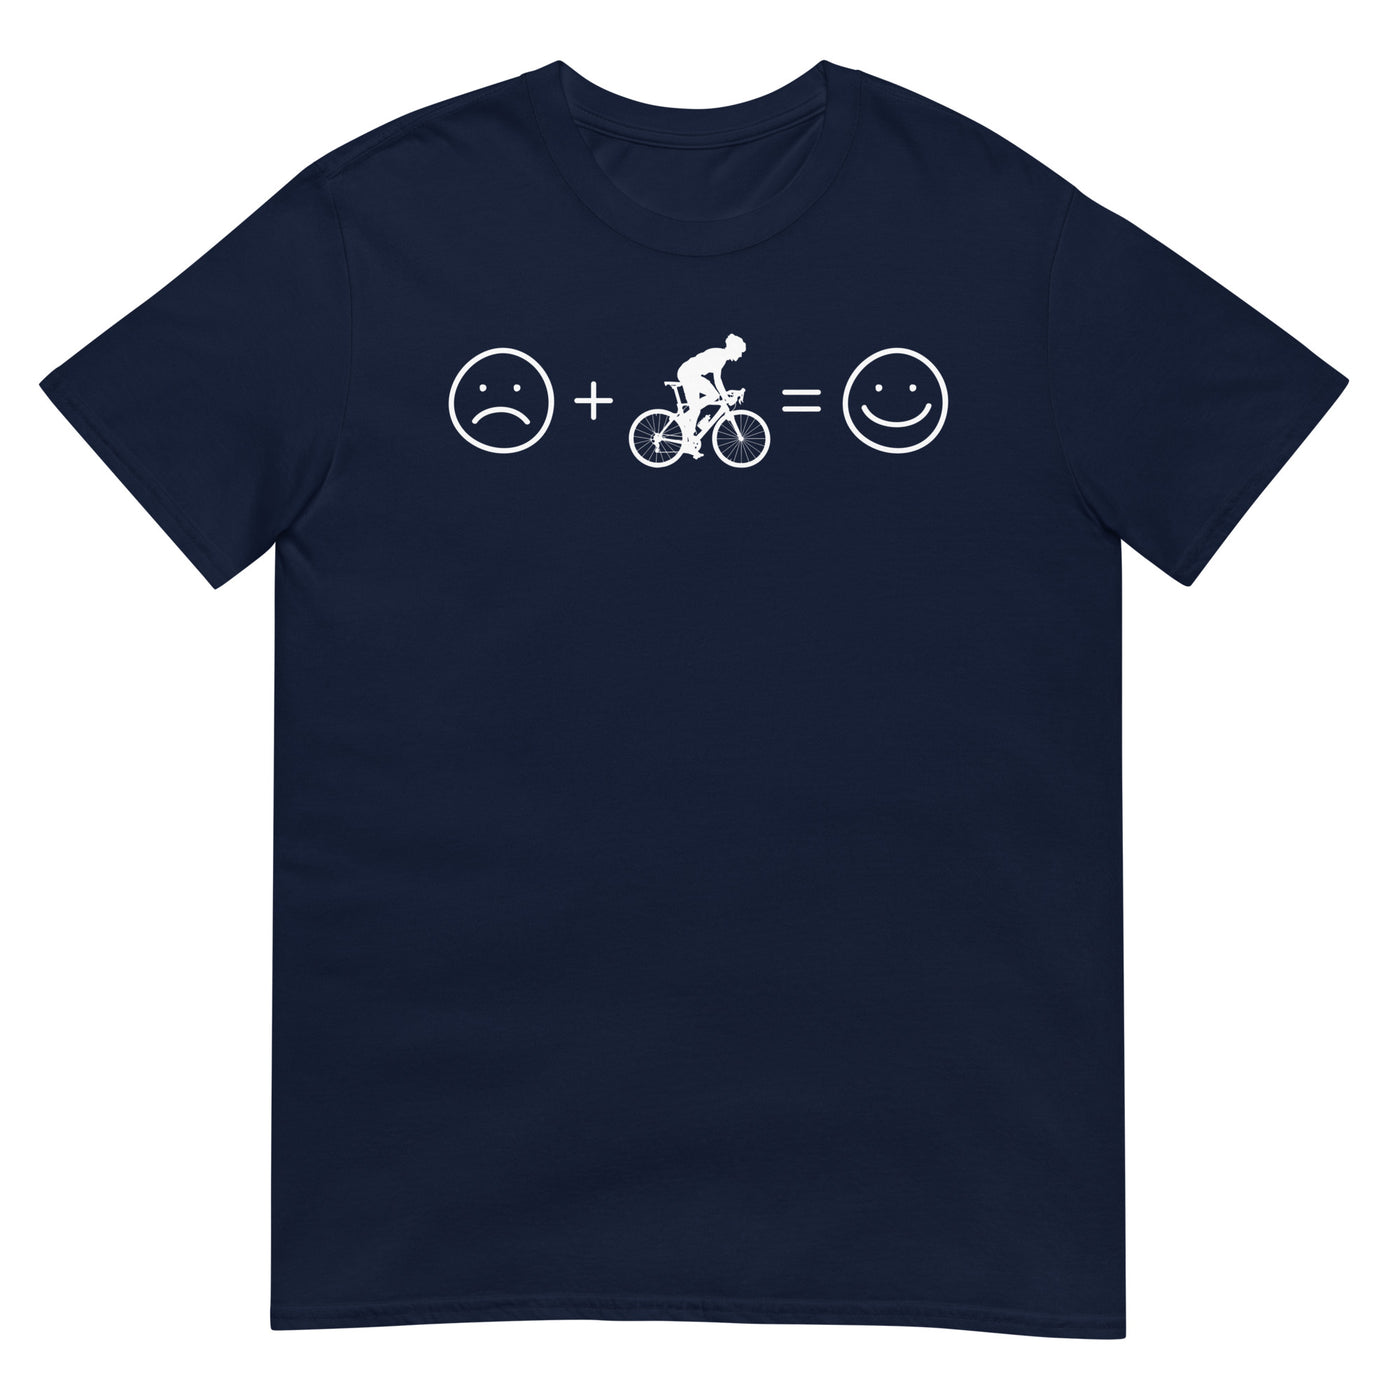 Lächelndes Gesicht und Radfahren - T-Shirt (Unisex) fahrrad xxx yyy zzz Navy